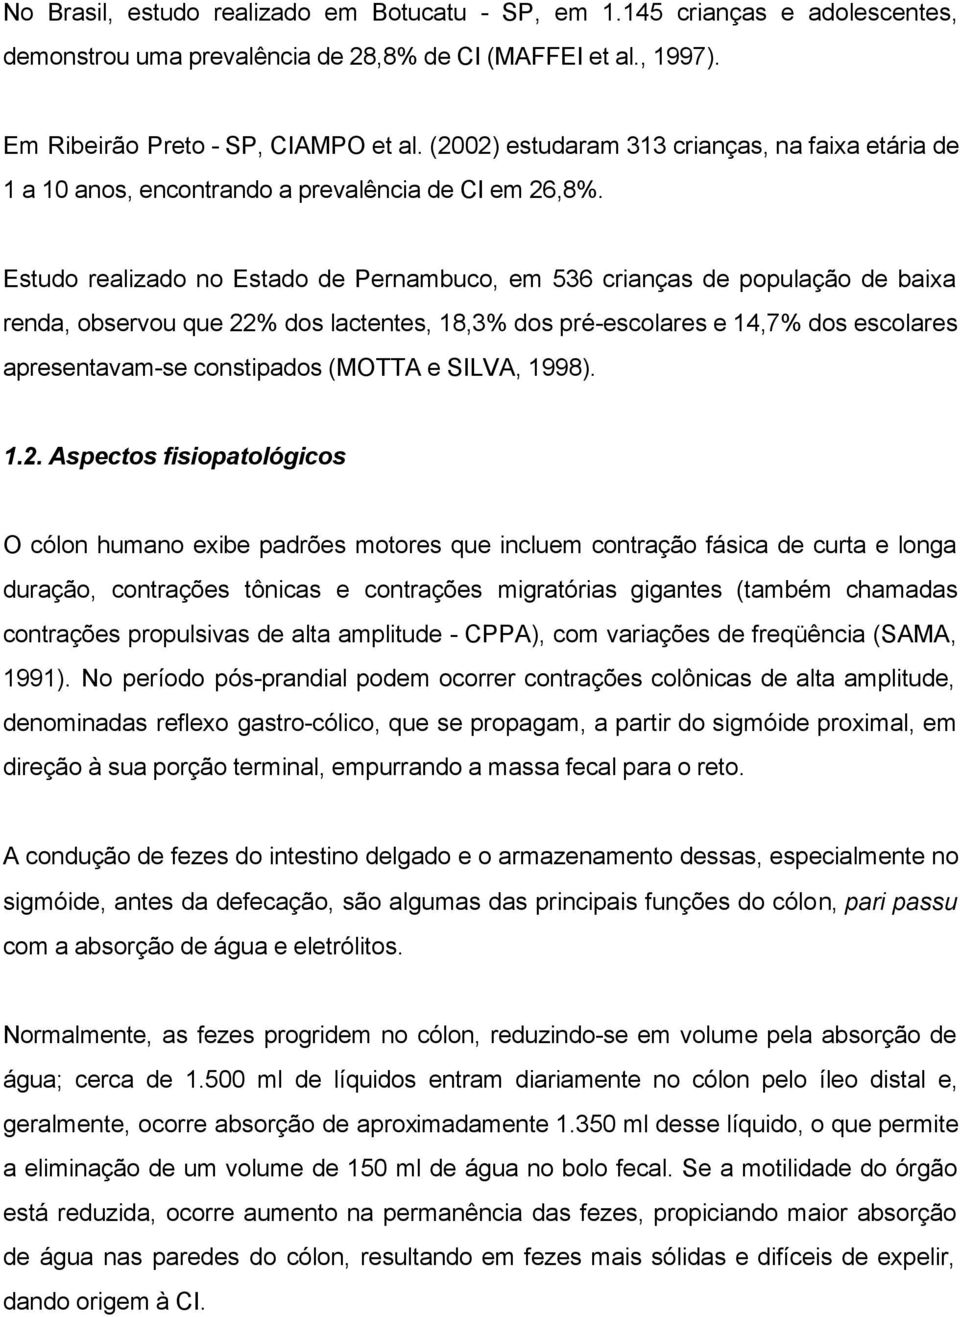 Estudo realizado no Estado de Pernambuco, em 536 crianças de população de baixa renda, observou que 22% dos lactentes, 18,3% dos pré-escolares e 14,7% dos escolares apresentavam-se constipados (MOTTA